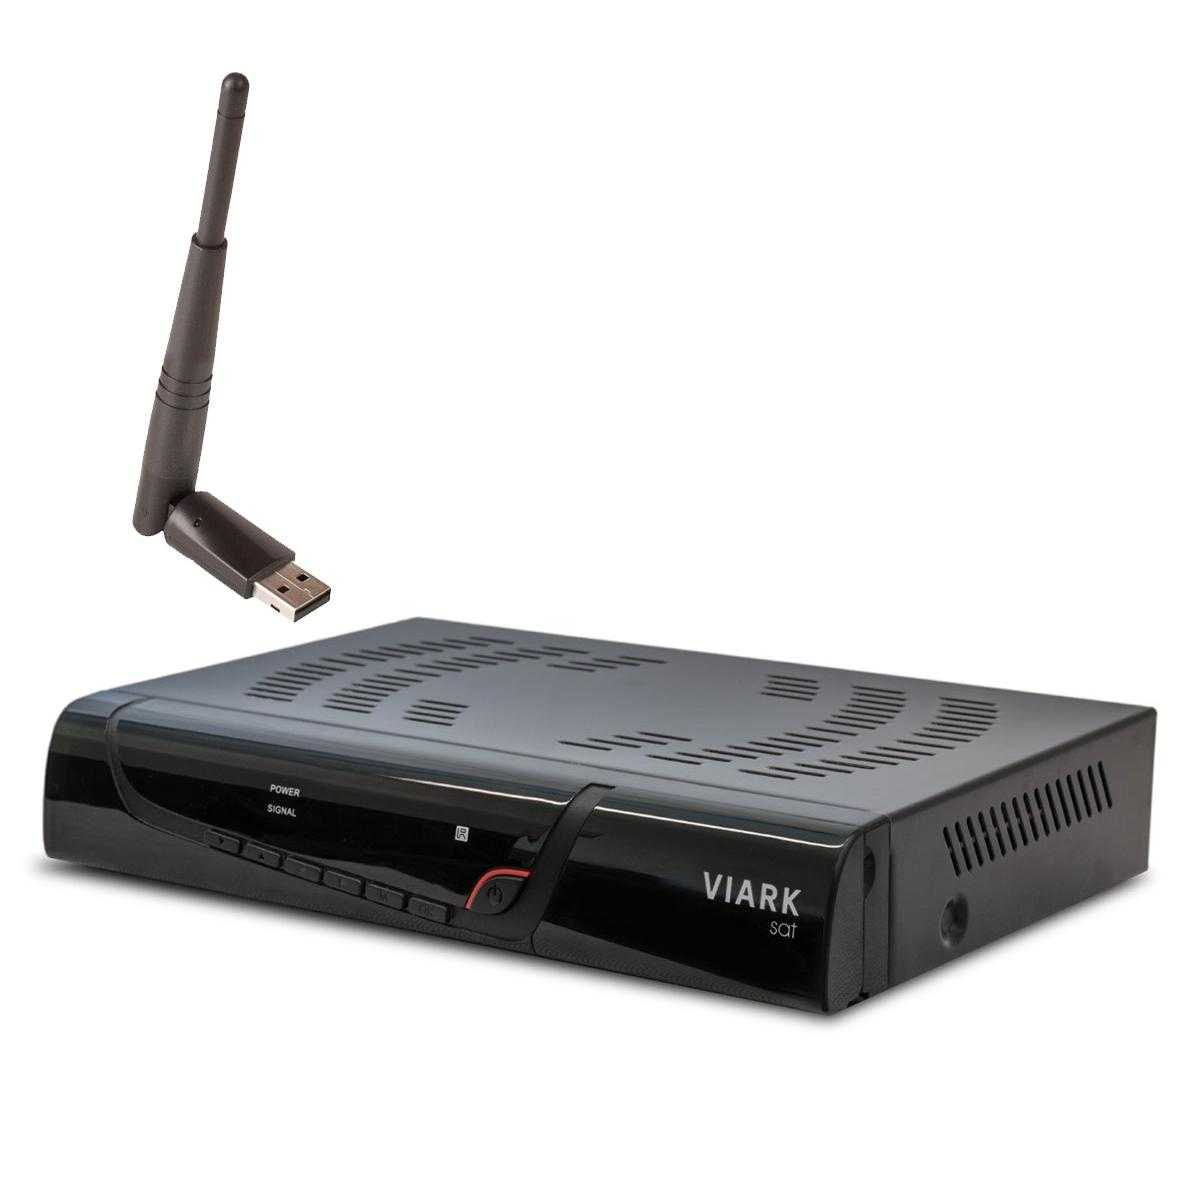 Viark Sat Full HD Sat H.265 HEVC Receiver DVB-S2 IPTV 1080p WLAN